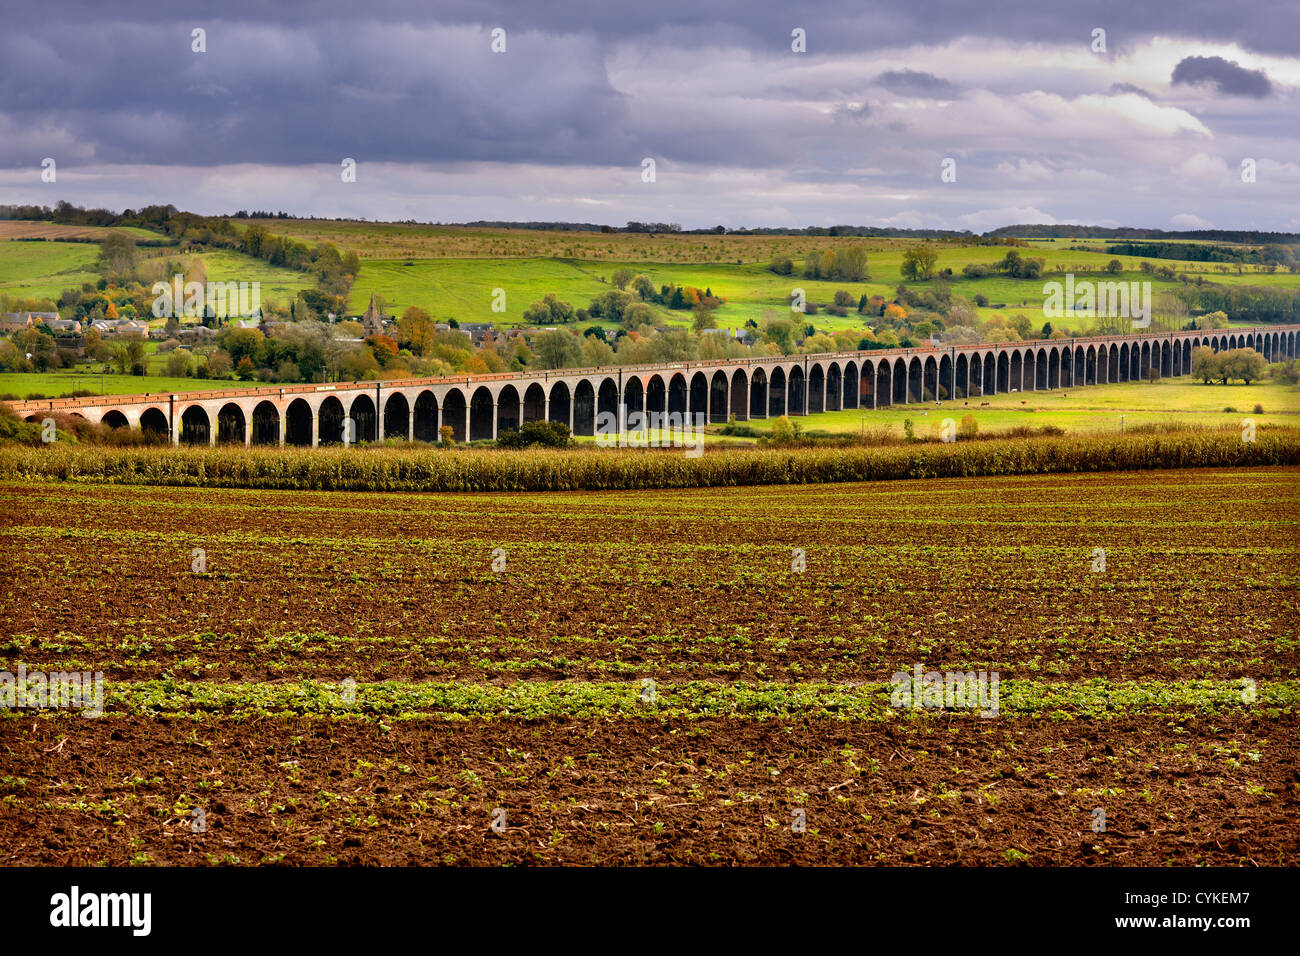 Welland-Viadukt, auch bekannt als Harringworth-Viadukt oder Seaton Viadukt. Erstreckt sich über das Welland-Tal von Northamptonshire, Rutland Stockfoto